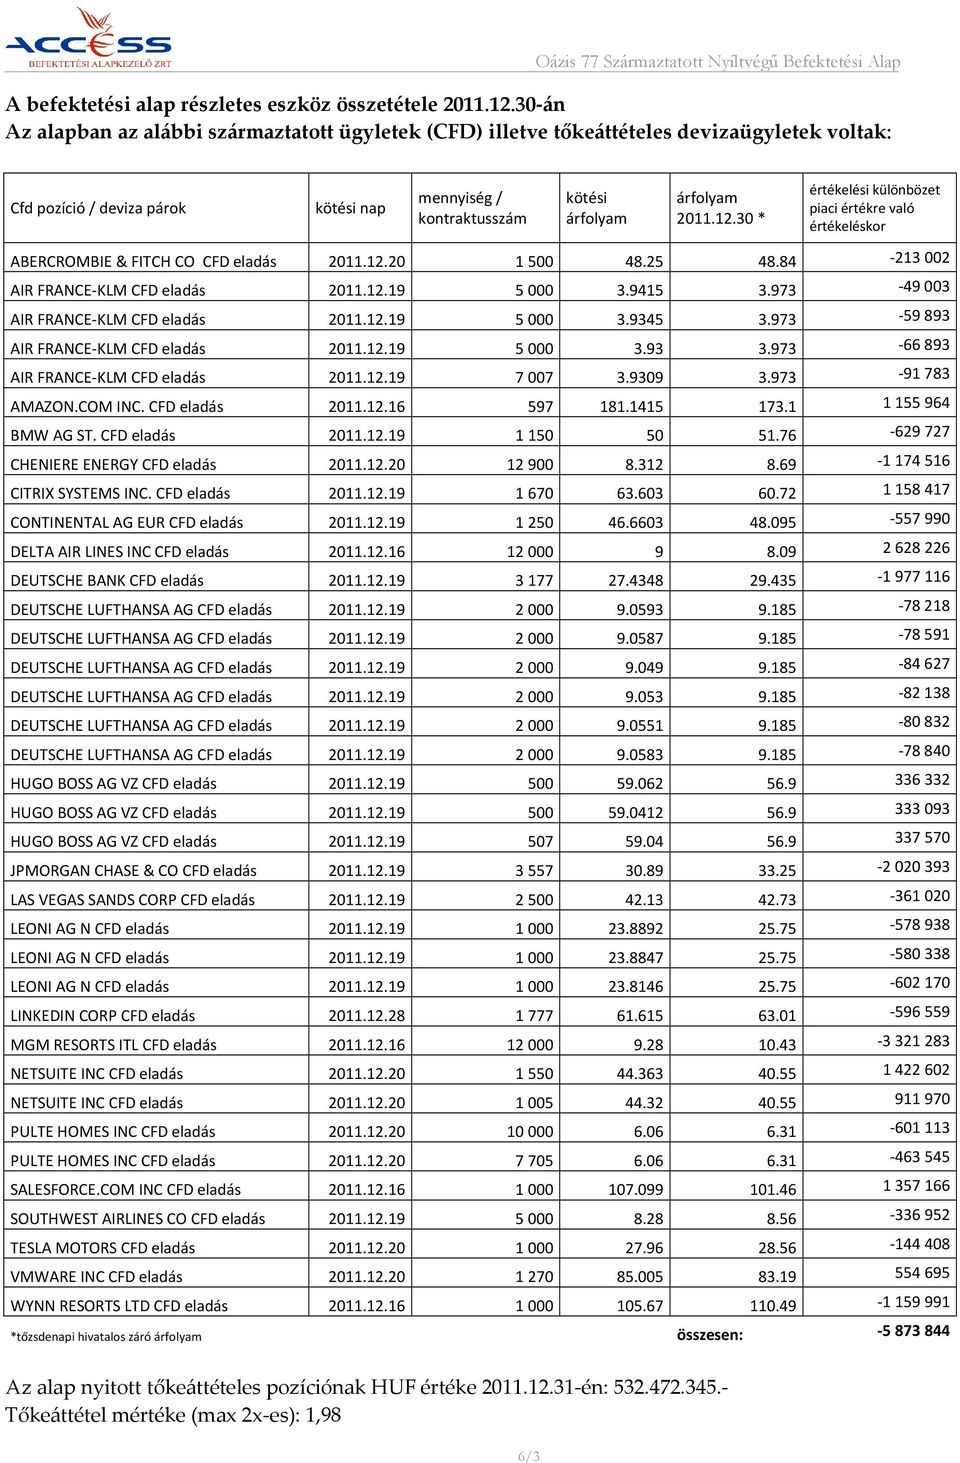 30 * értékelési különbözet piaci értékre való értékeléskor ABERCROMBIE & FITCH CO CFD eladás 2011.12.20 1500 48.25 48.84-213002 AIR FRANCE-KLM CFD eladás 2011.12.19 5000 3.9415 3.